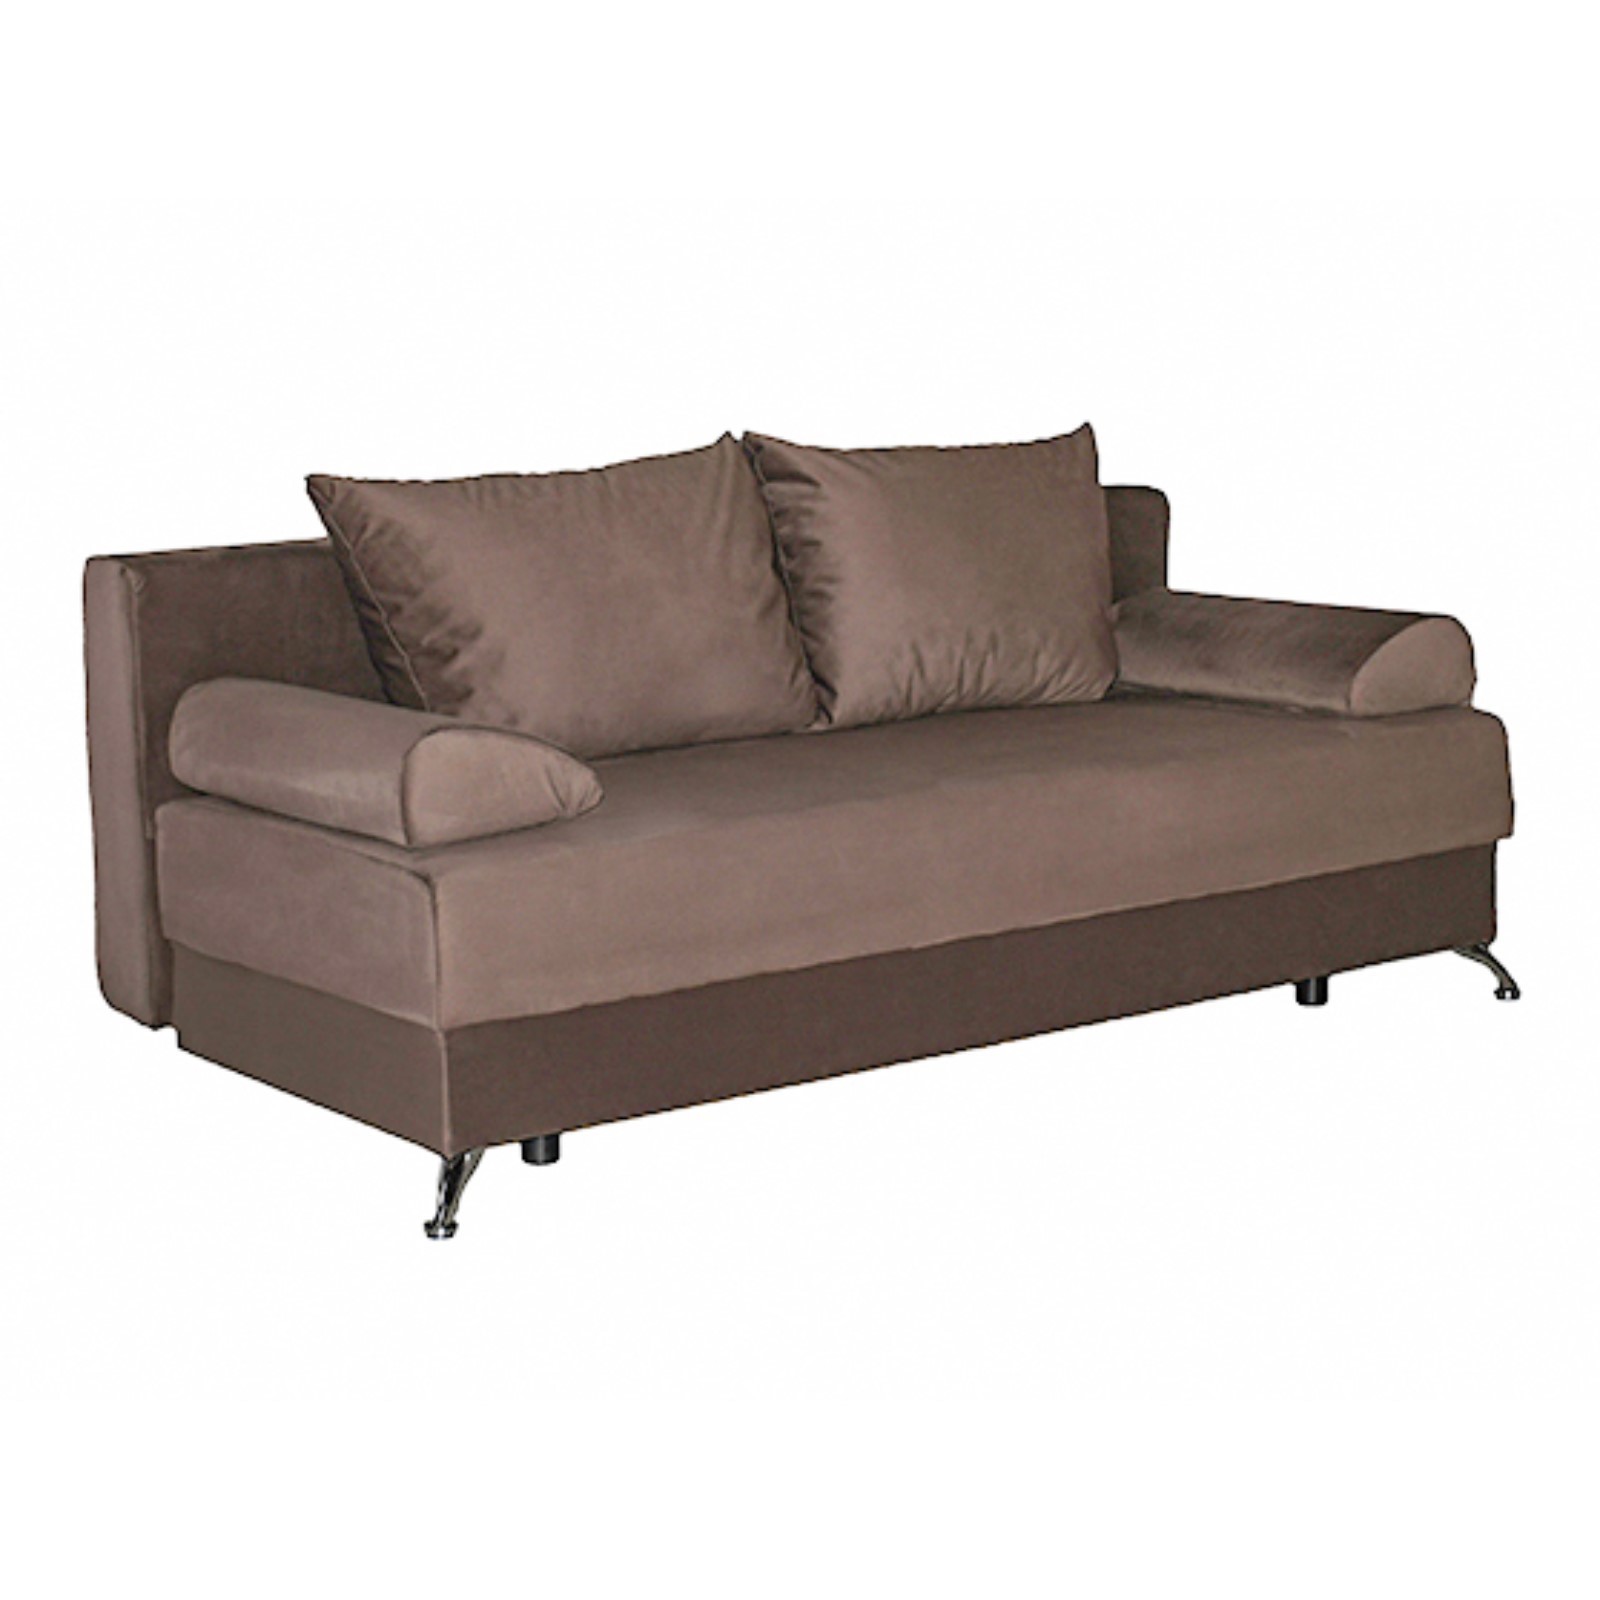 Купить Прямой диван «Юность 11», механизм еврокнижка, пружинный блок,велюр, цвет коричневый (7995718) в Крыму, цены, отзывы, характеристики